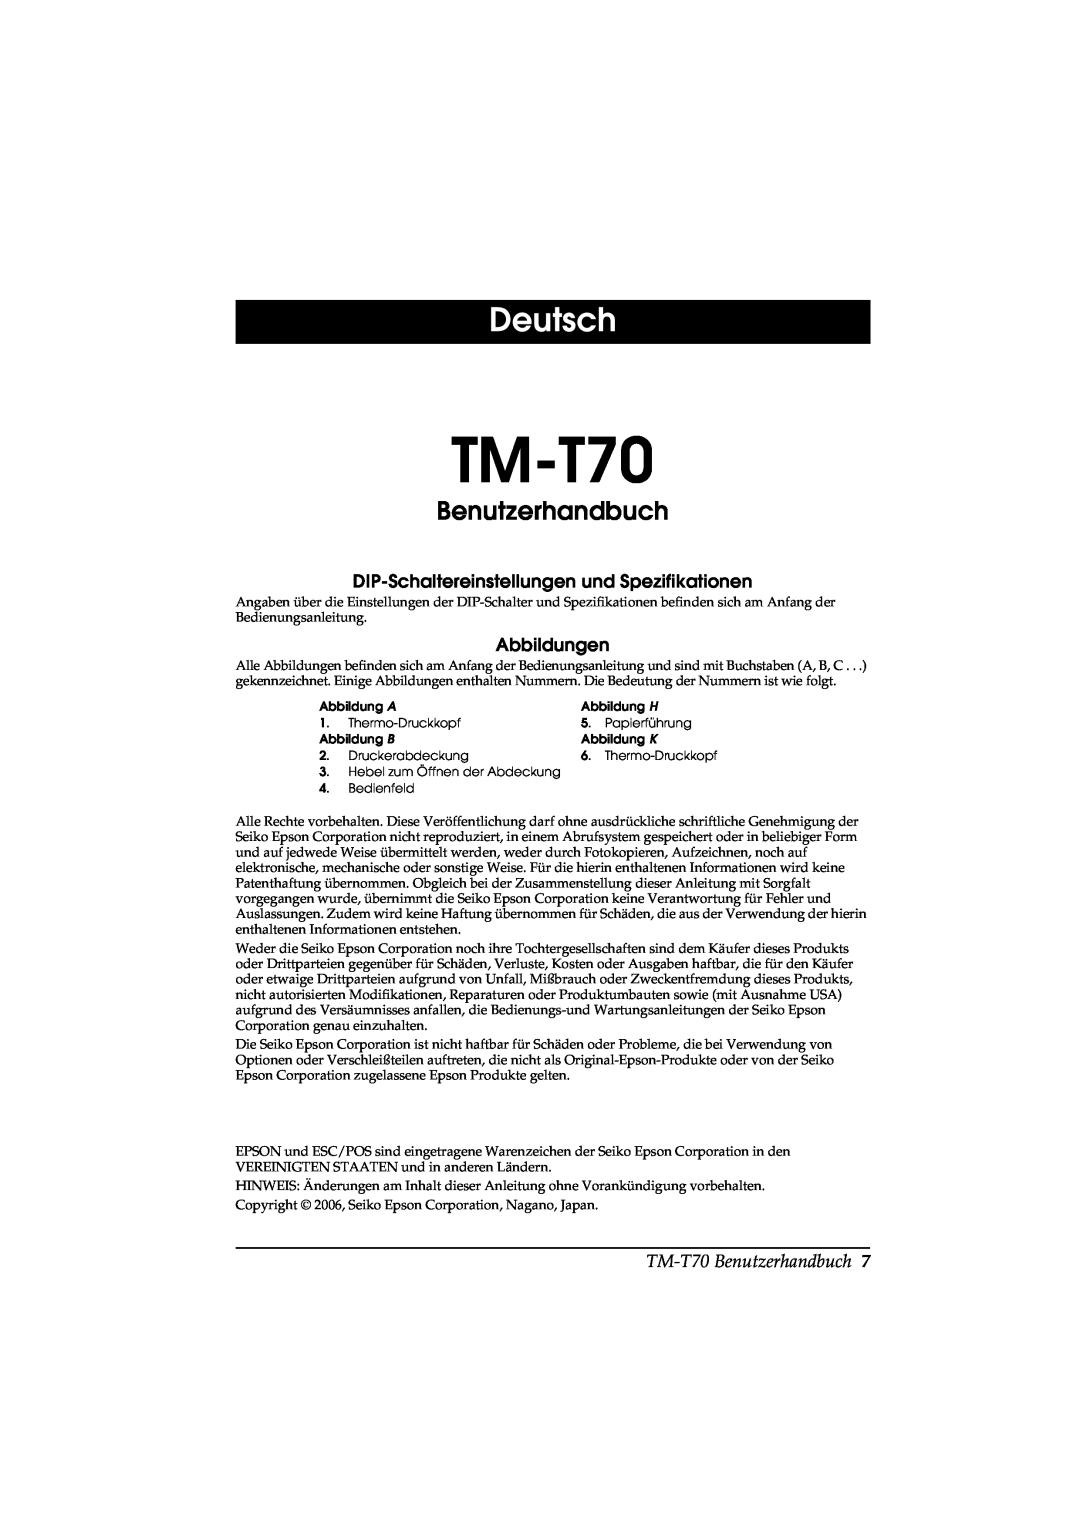 Seiko Group TM-T70 user manual Deutsch, Benutzerhandbuch, DIP-Schaltereinstellungen und Spezifikationen, Abbildungen 